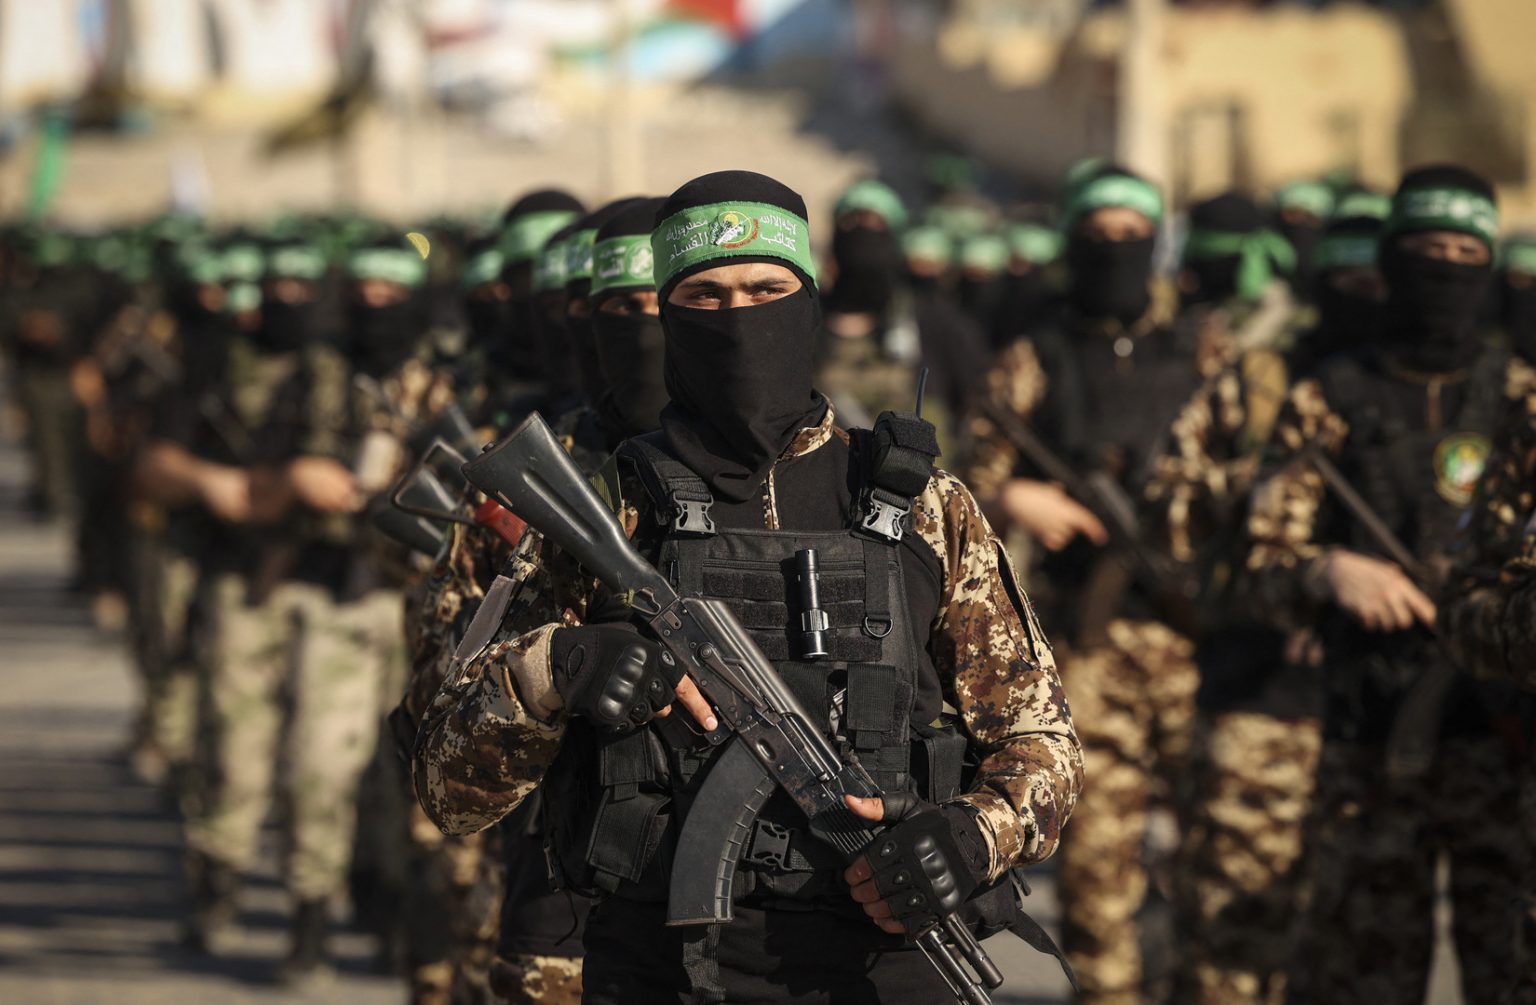 إعلام عبري: الأنفاق موجودة والأرض لم يتم احتلالها و إسرائيل بعيدة عن تدمير "حماس"